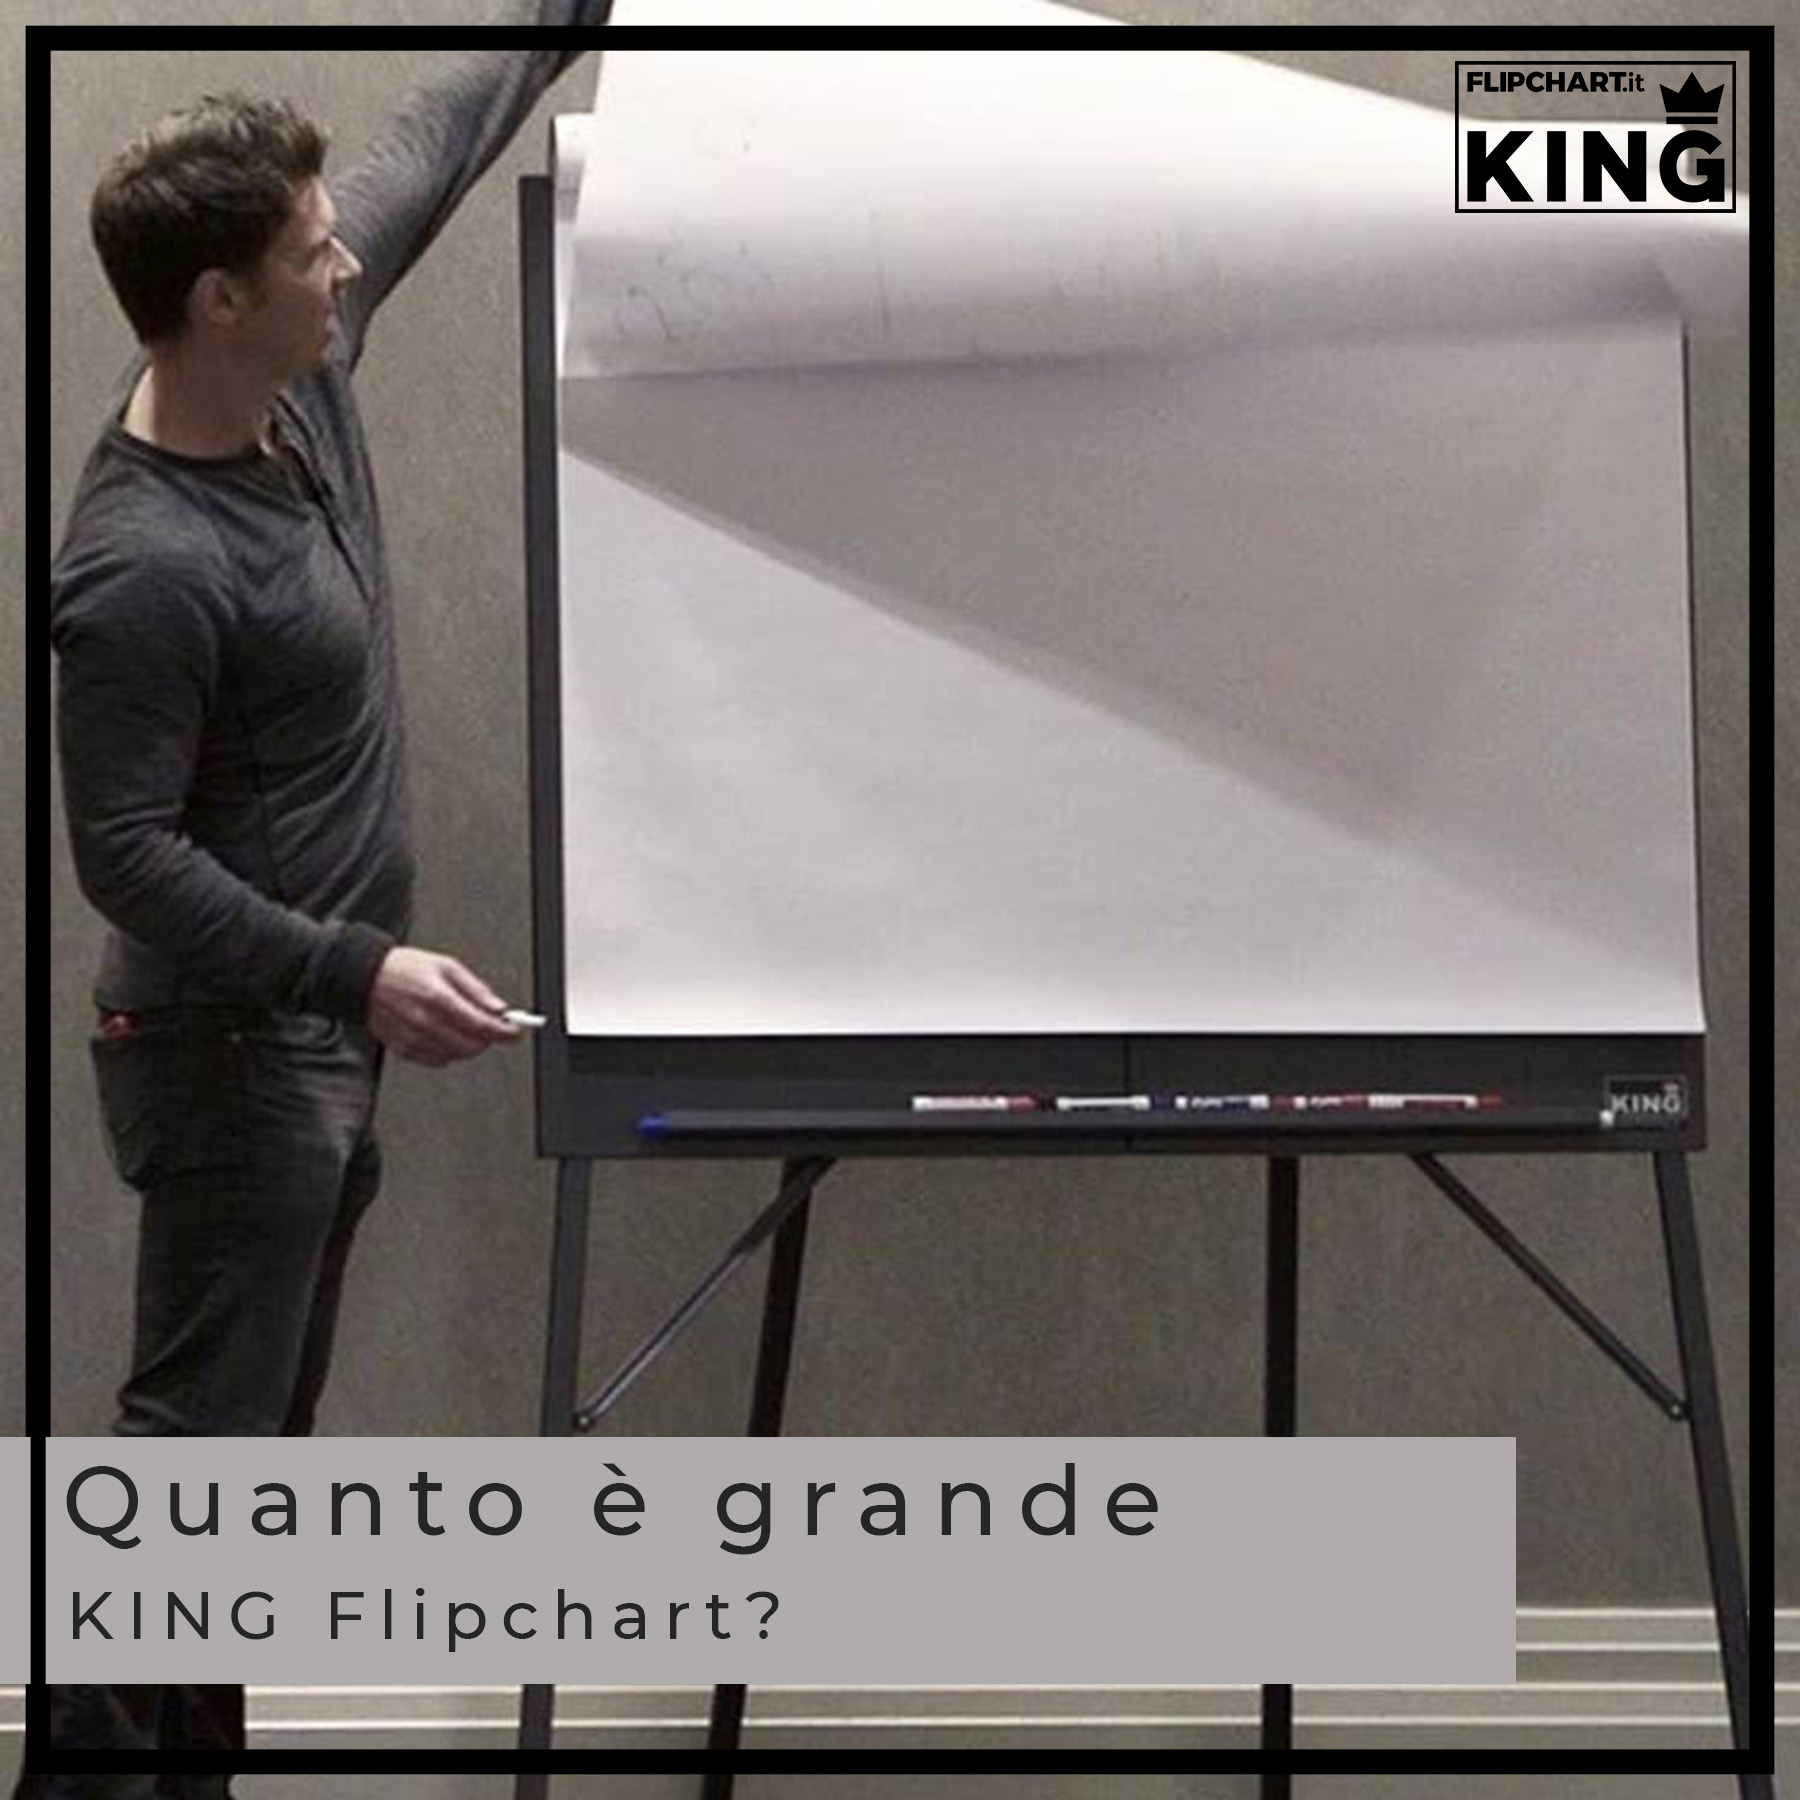 Le dimensioni della grande lavagna portablocco KING Flipchart